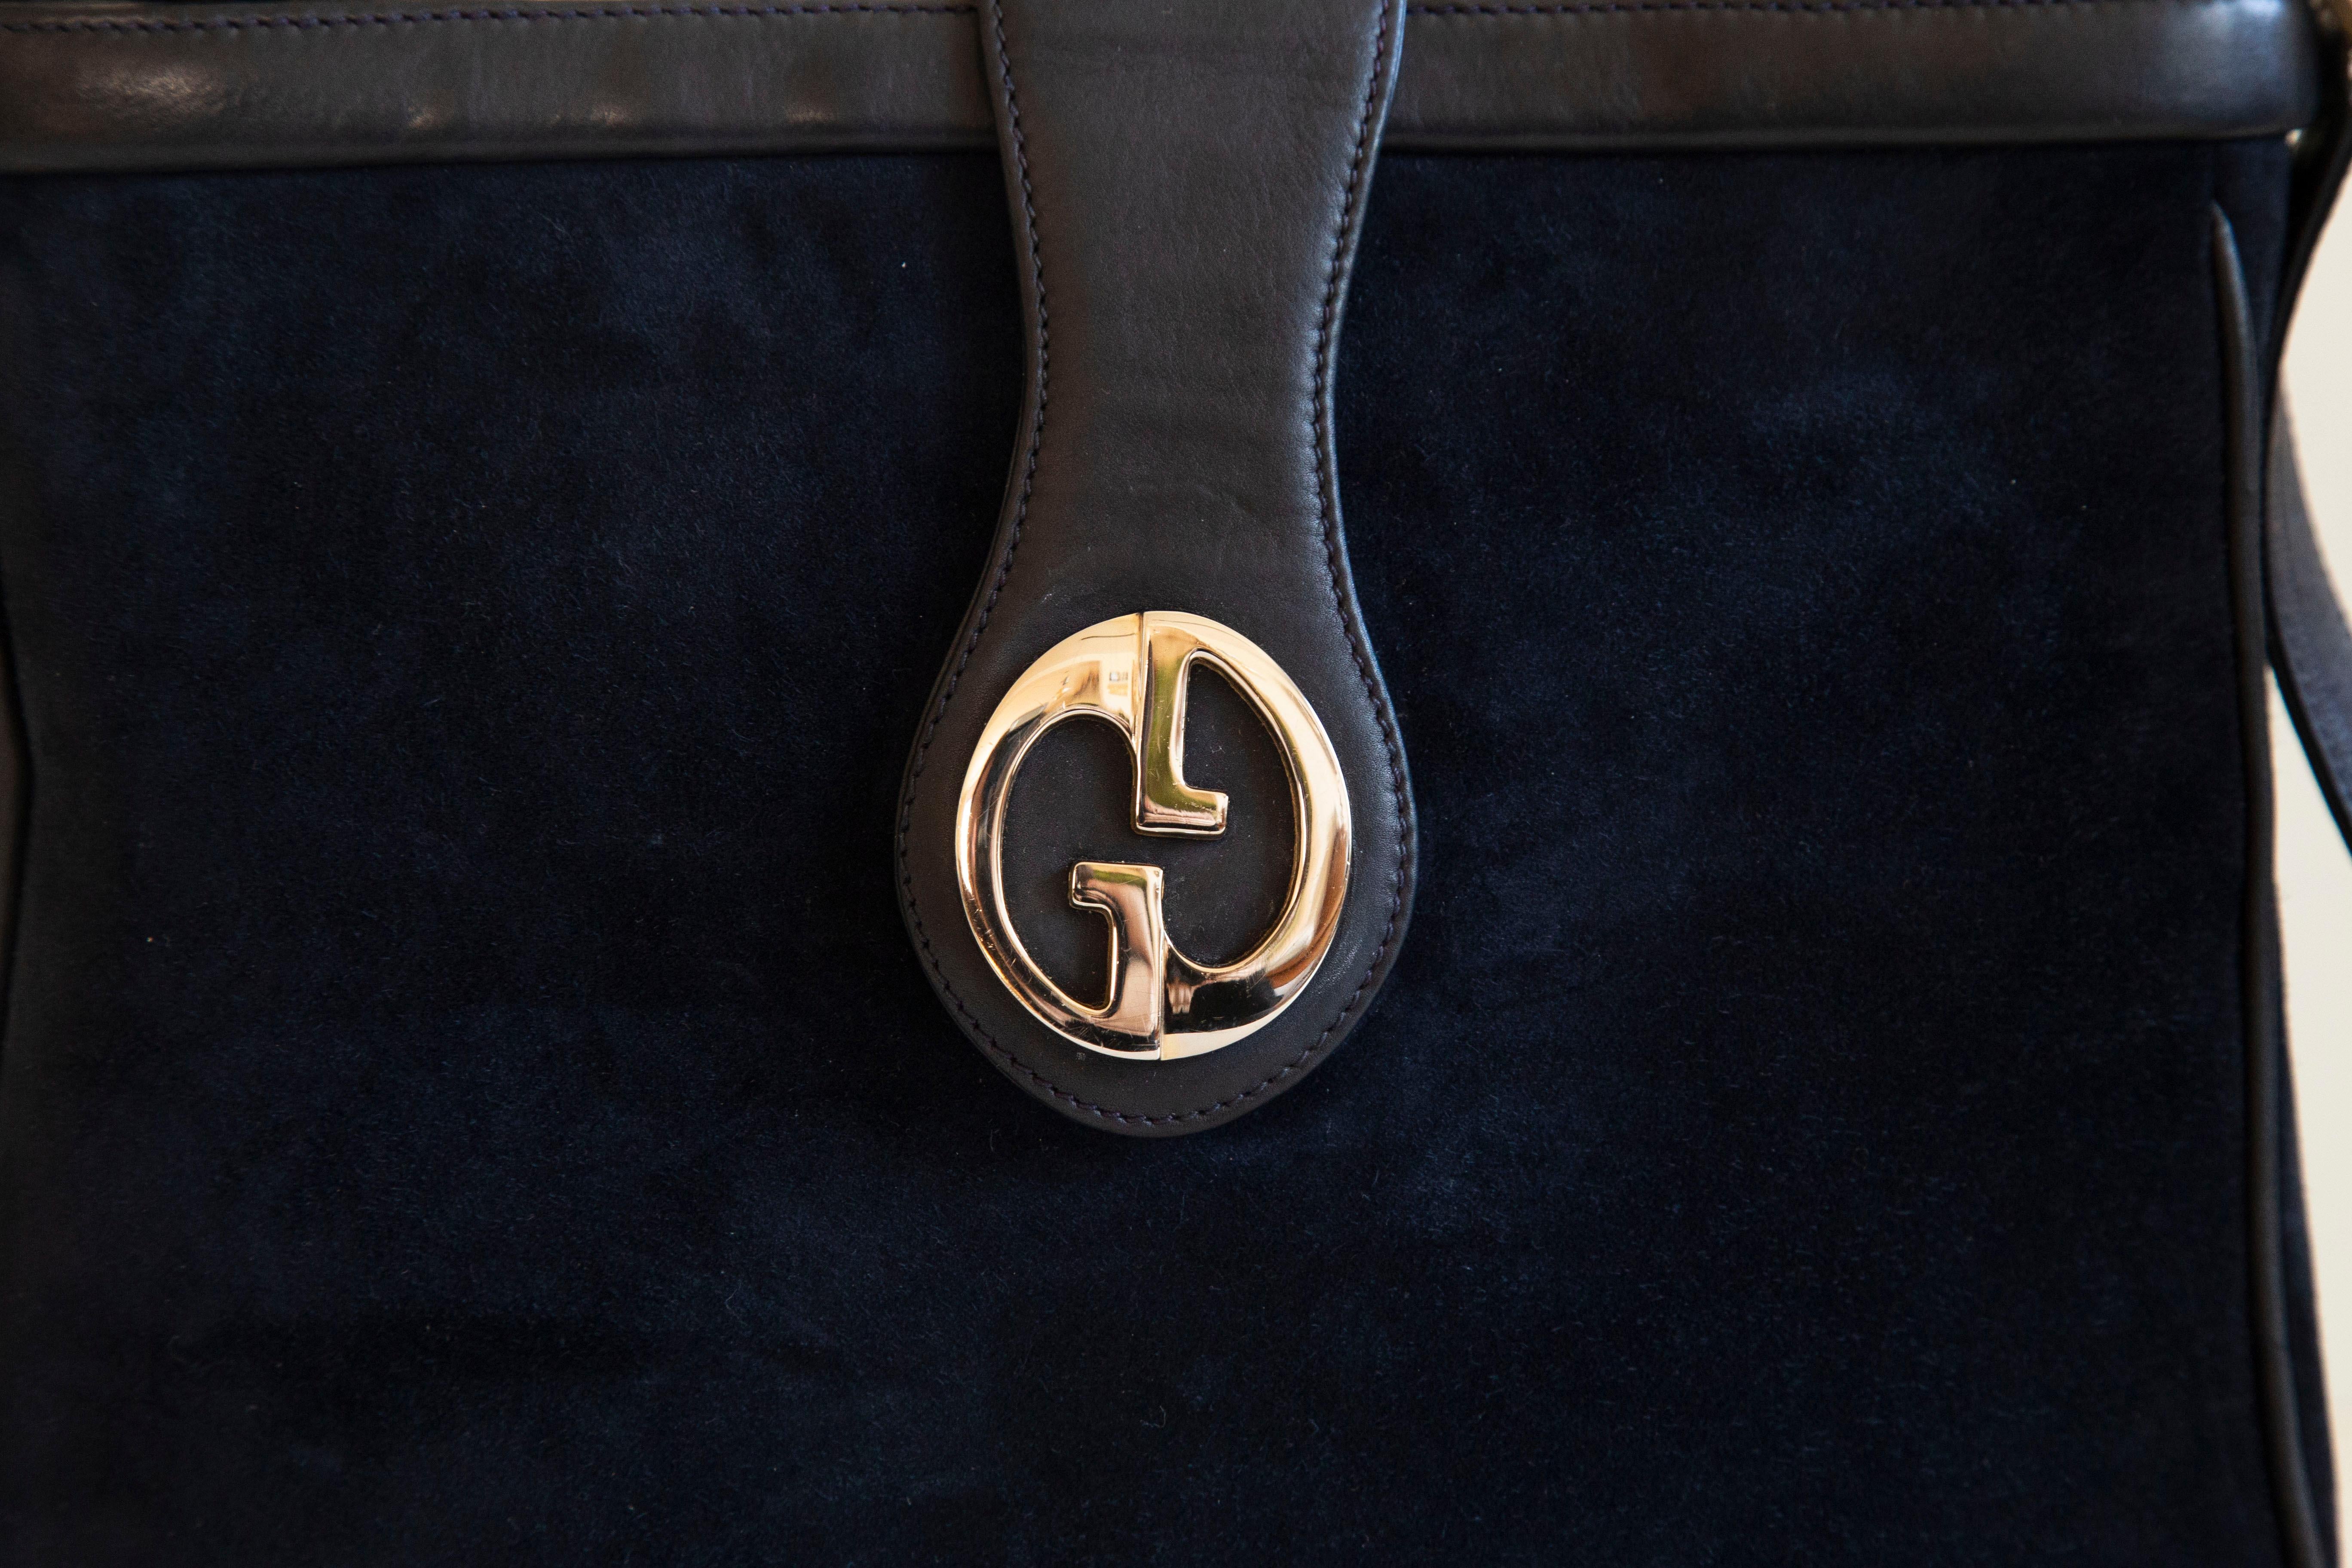 Sac à bandoulière vintage Gucci GG, vers les années 1970, Italie. Ce sac présente un extérieur en daim bleu foncé, des ferrures GG de couleur argentée et une garniture en cuir souple bleu foncé. L'intérieur est doublé de cuir bleu foncé et comporte